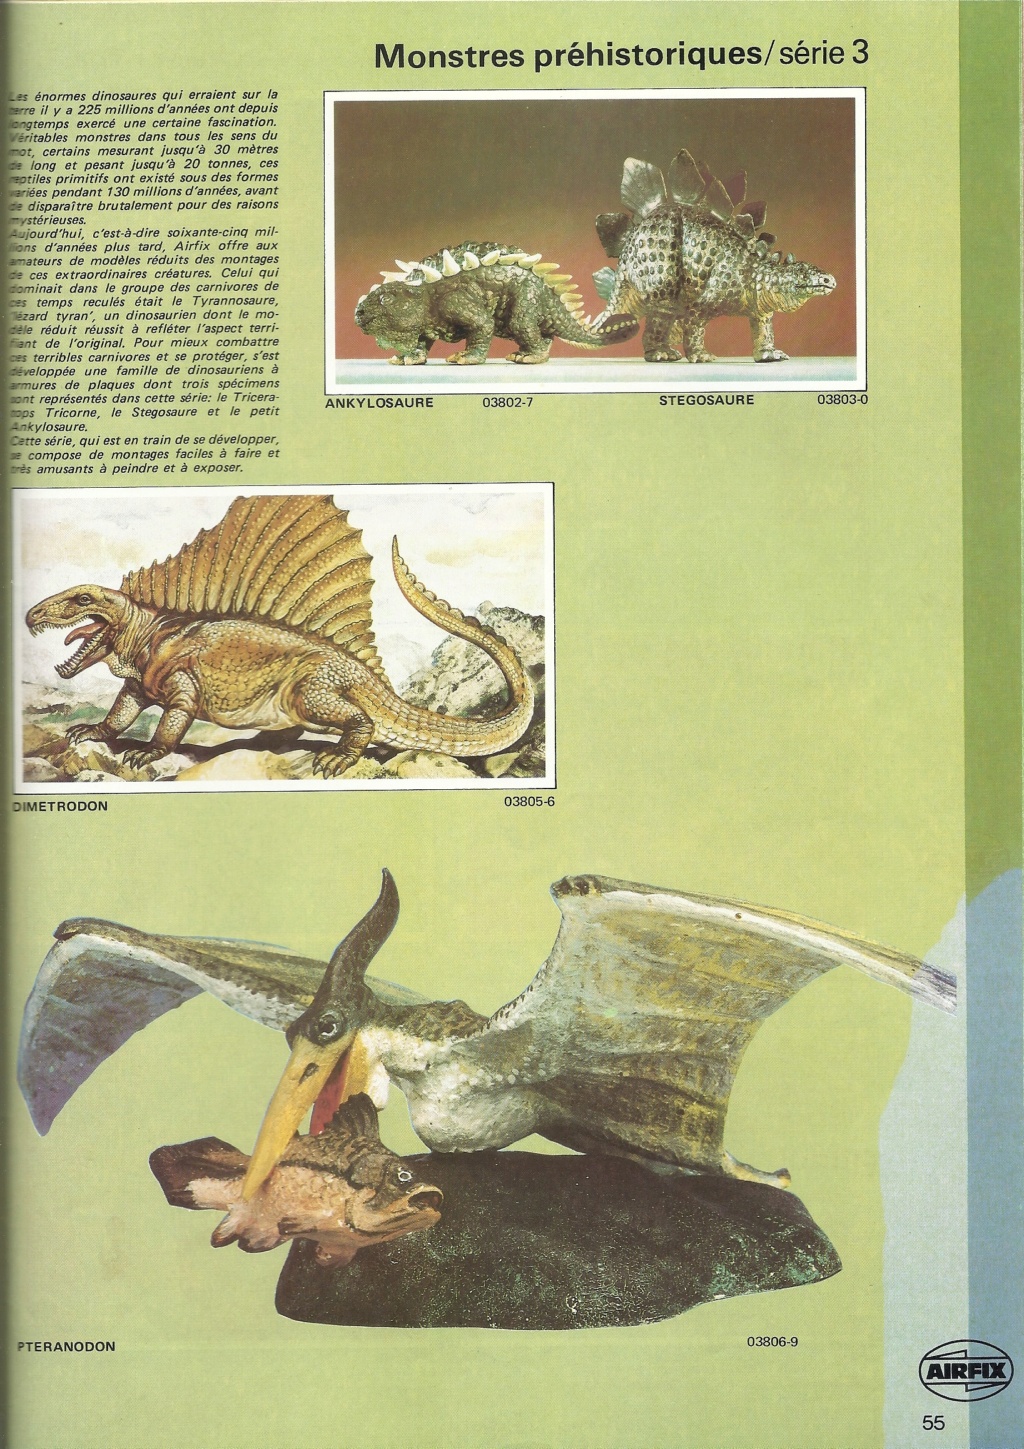 [AIRFIX 1980] Catalogue 1980 17ème édition  Airf3028